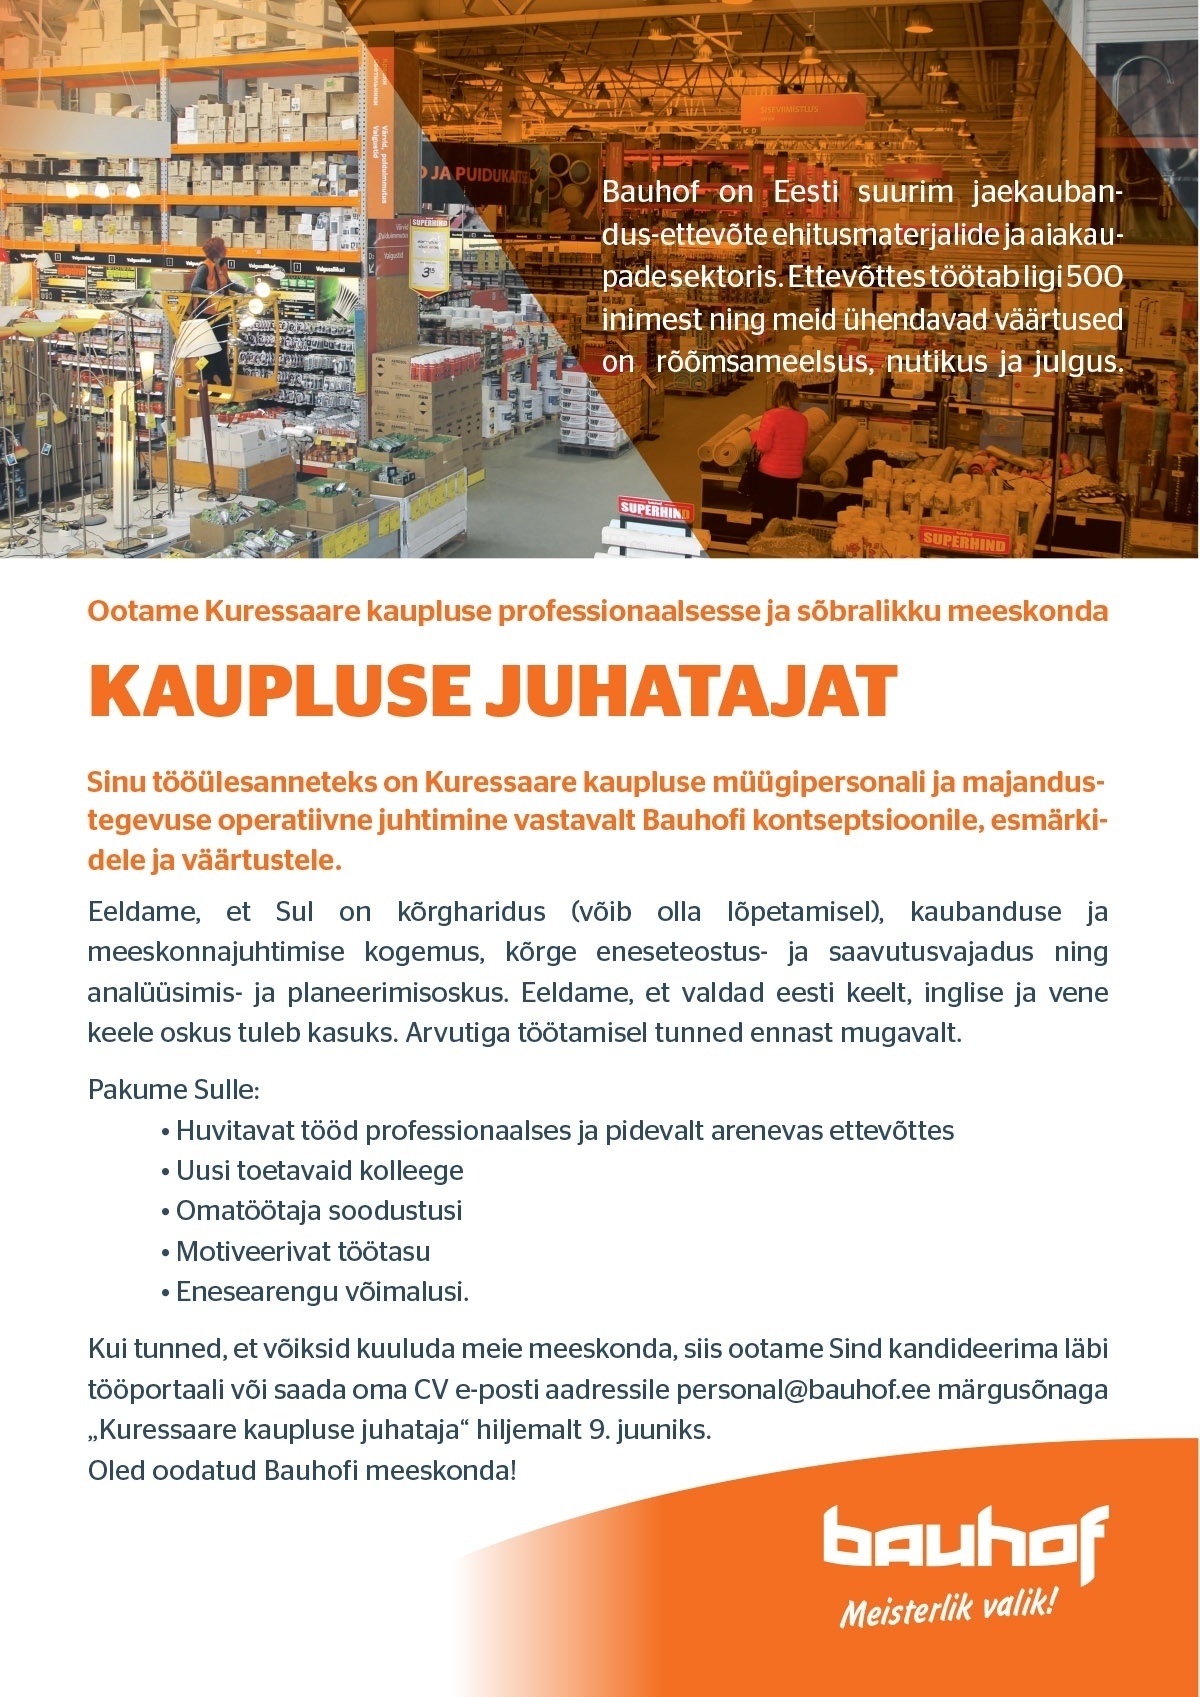 Bauhof Group AS Kuressaare kaupluse juhataja